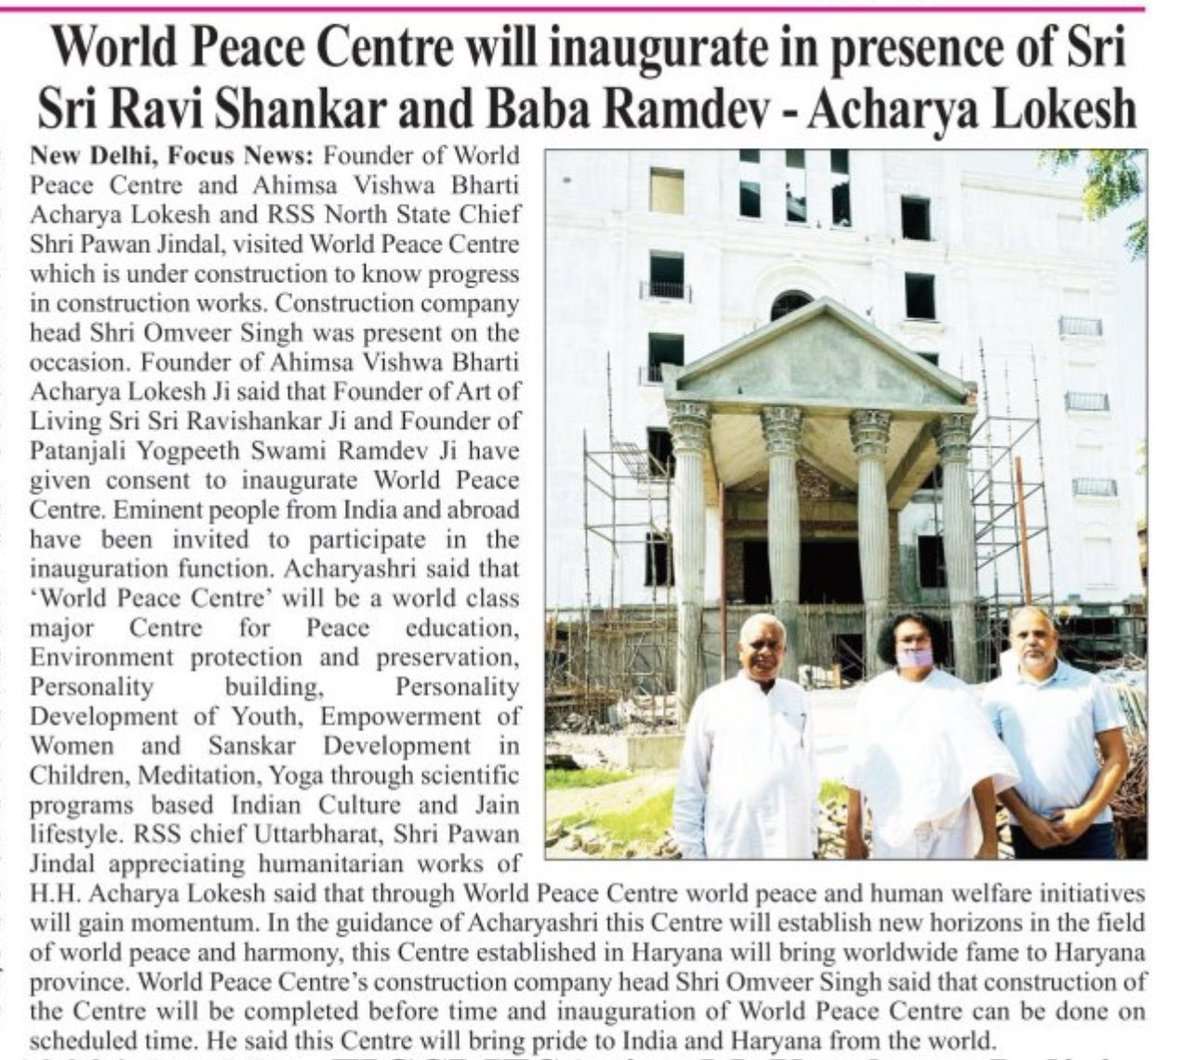 विश्व शांति केंद्र के उद्घाटन समारोह में पूज्य श्री श्री रविशंकर जी, पूज्य स्वामी रामदेव जी सहित देश, विदेश की विशिष्ट हस्तियाँ शिरकत करेंगी। #peace #harmony #compassion #love #jain #AcharyaLokesh #WorldPeaceCenter #jainism